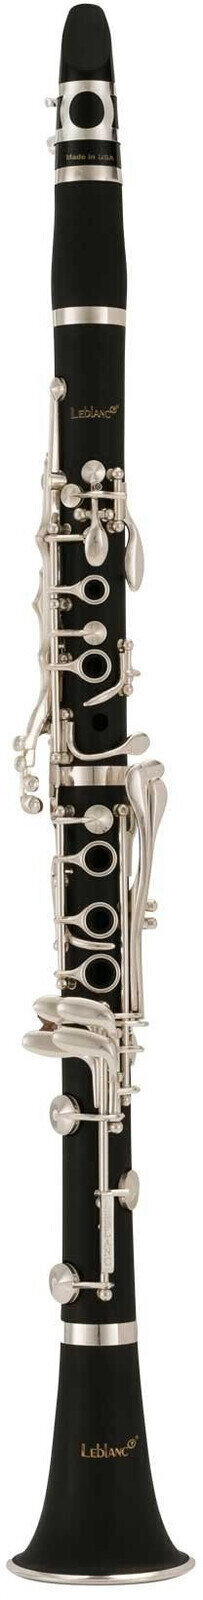 Bb klarinet Leblanc Bb CL650 Bb klarinet